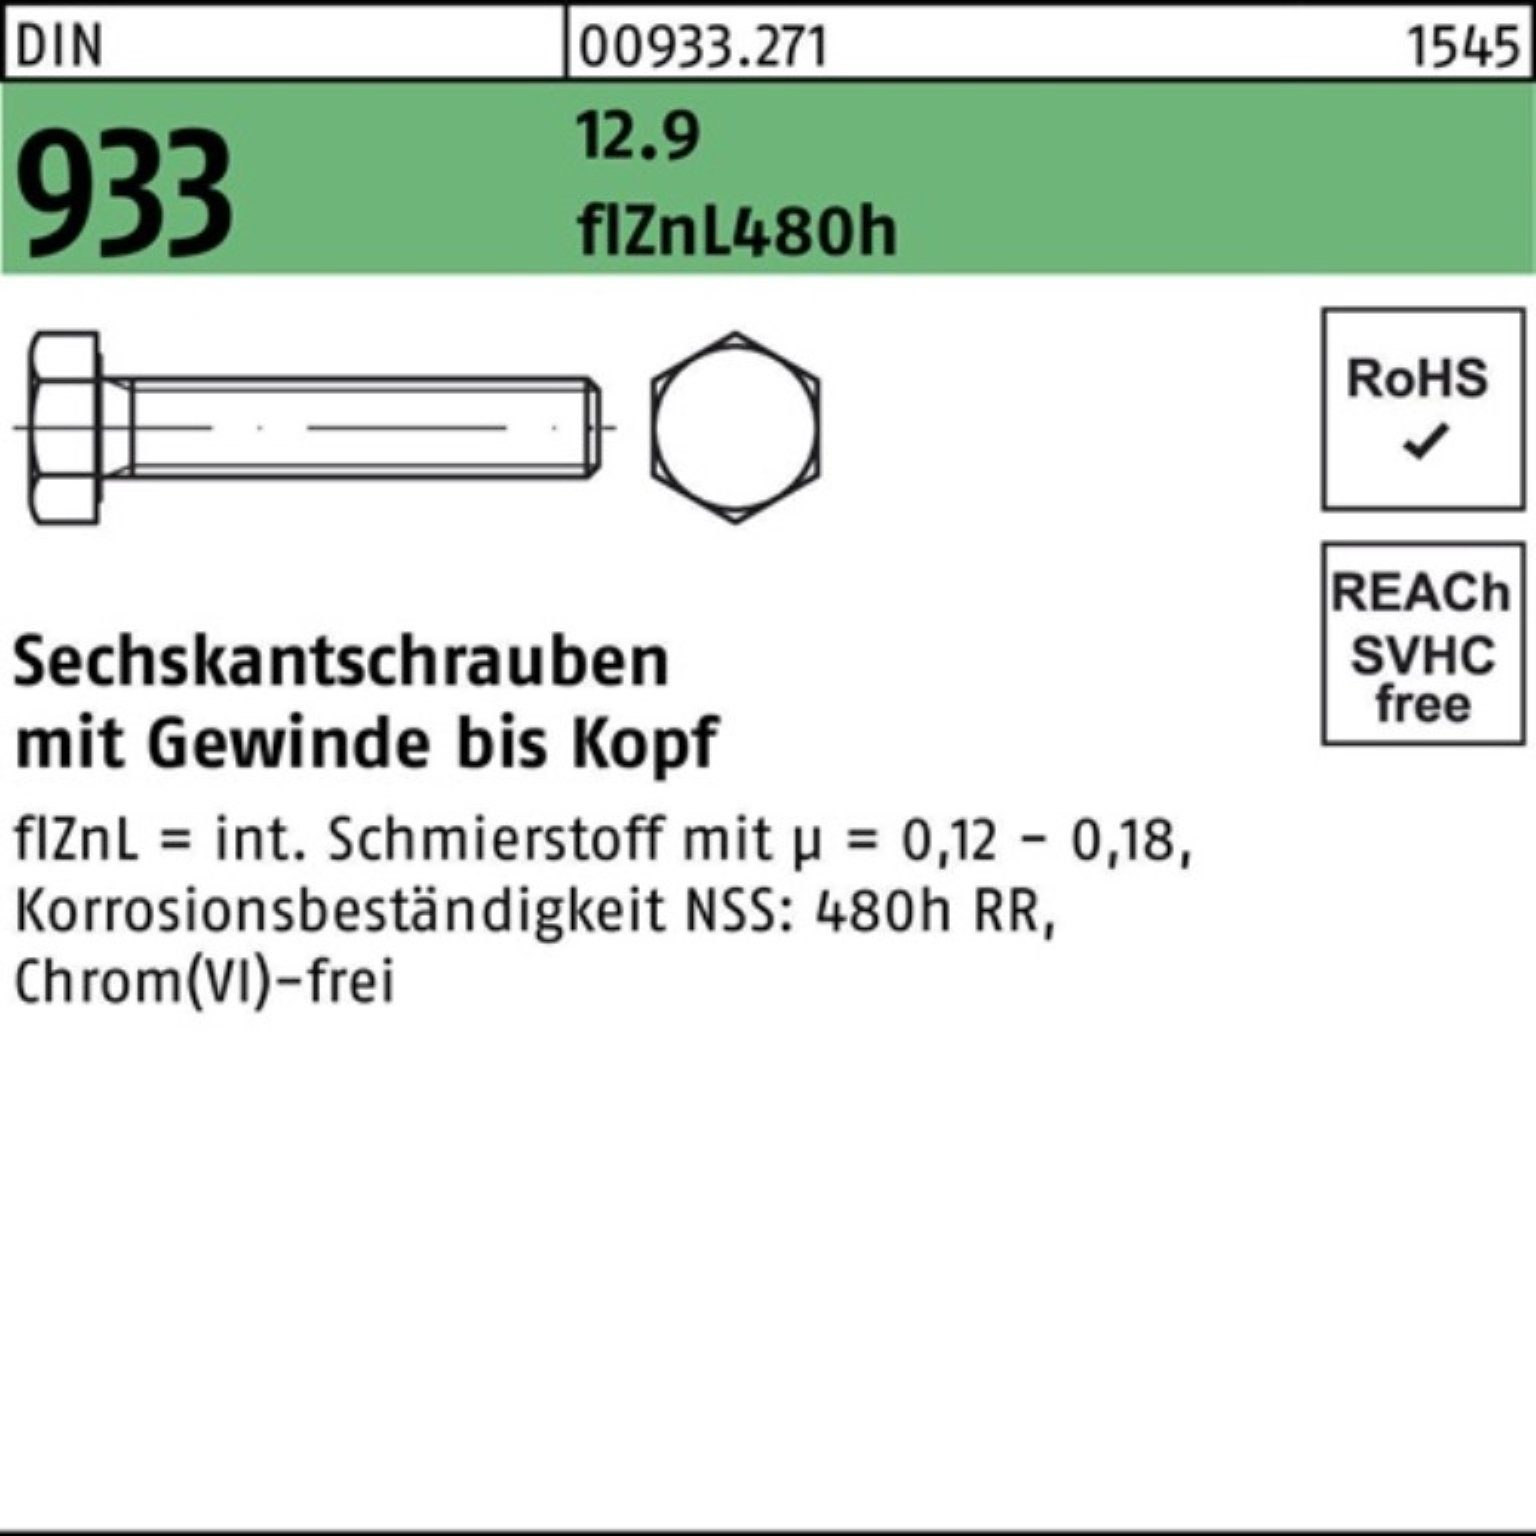 Reyher Sechskantschraube 500er Pack Sechskantschraube DIN 933 VG M6x 12 12.9 flZnL 480h zinklam